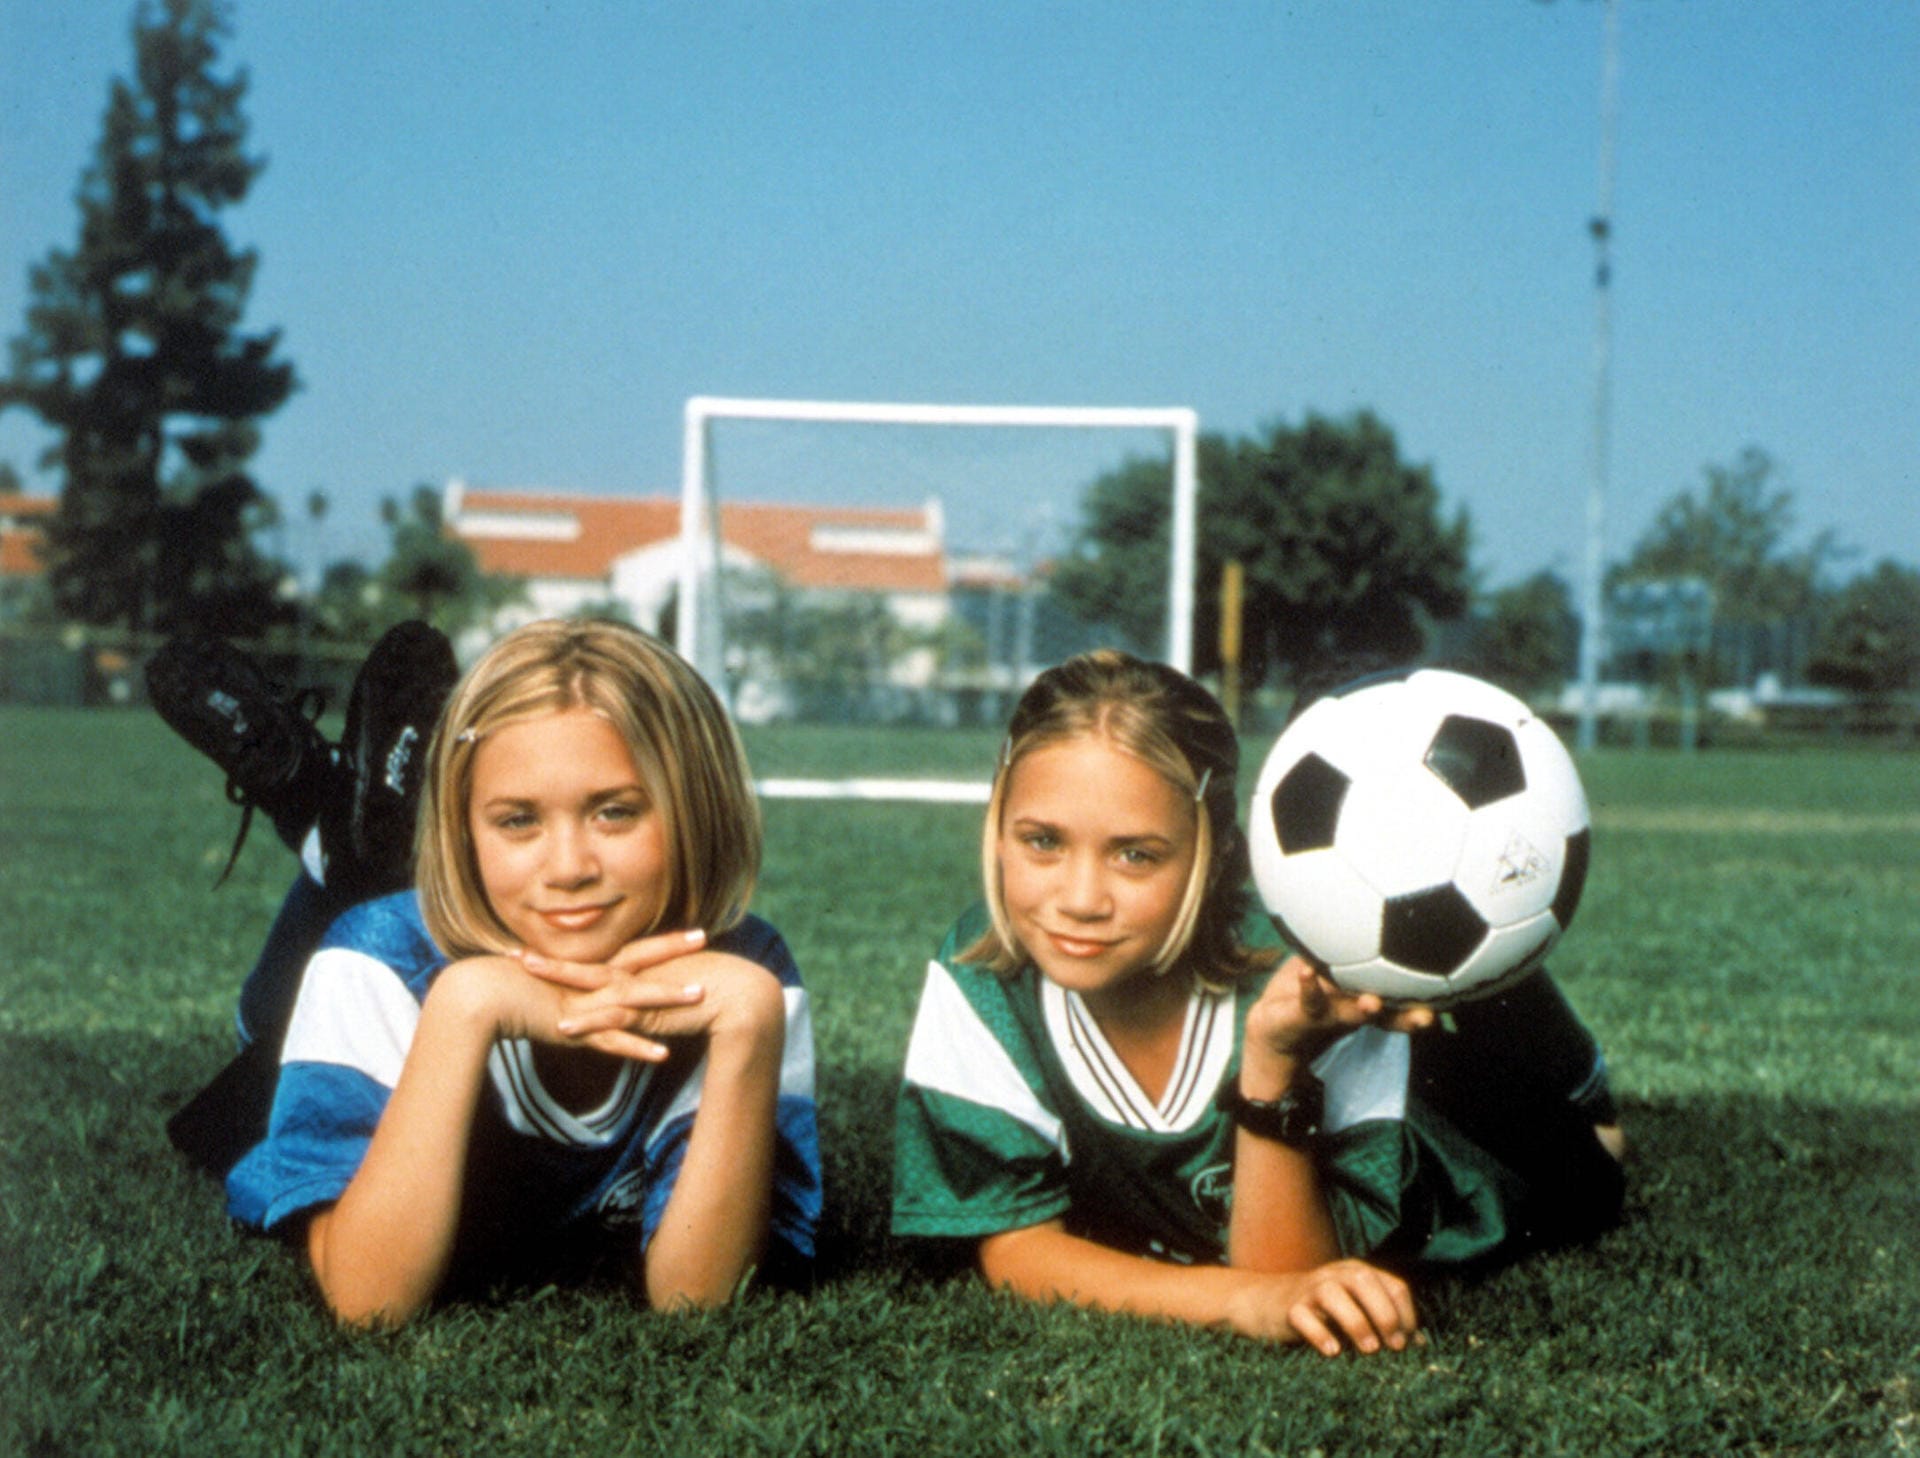 Der Film "Switching Goals" mit den Olsen-Zwillingen wurde 1999 veröffentlicht.